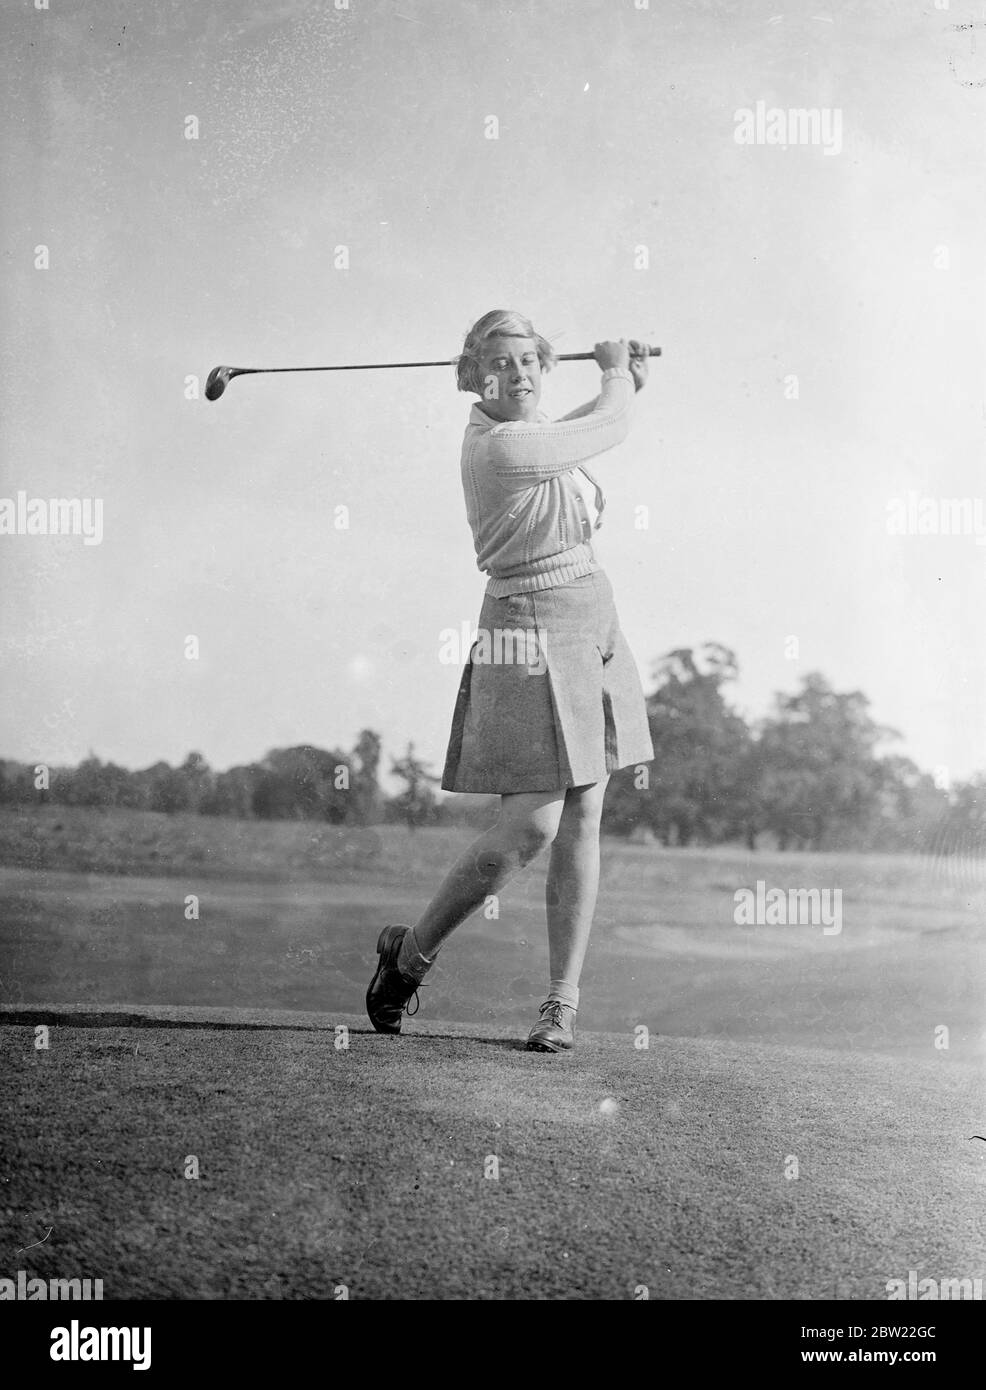 Joyce Dickenson. 44 concorrenti stanno partecipando al campionato di golf aperto per ragazze che ha aperto a Stoke Poges. Tutti i concorrenti di età inferiore ai 19 anni. 8 settembre 1937 Foto Stock